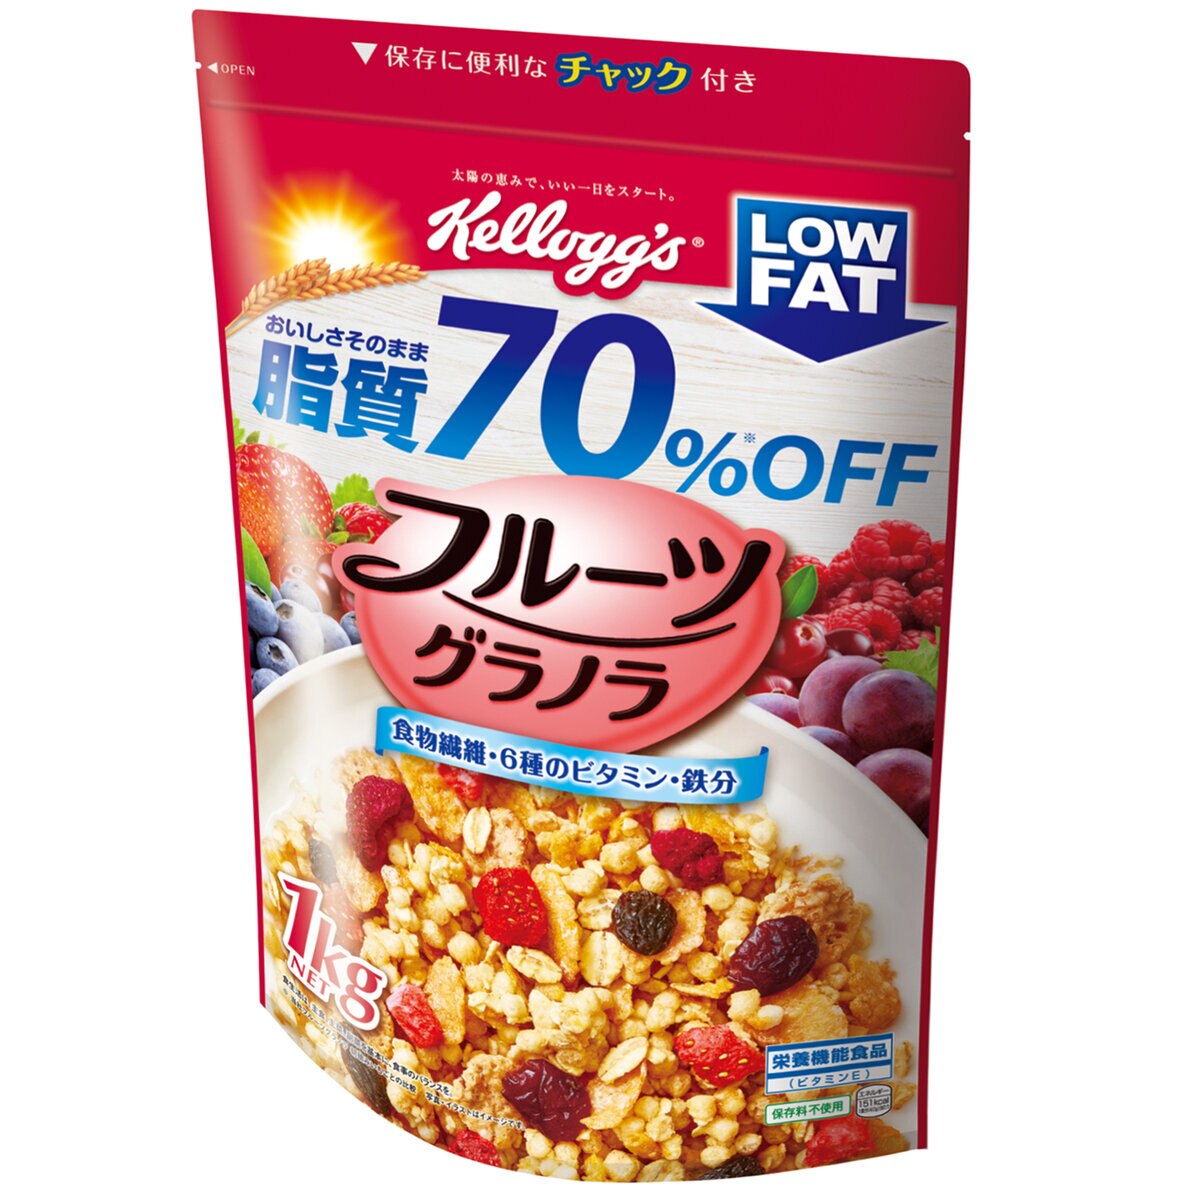 ケロッグ フルーツグラノラローファット 1kg | Costco Japan